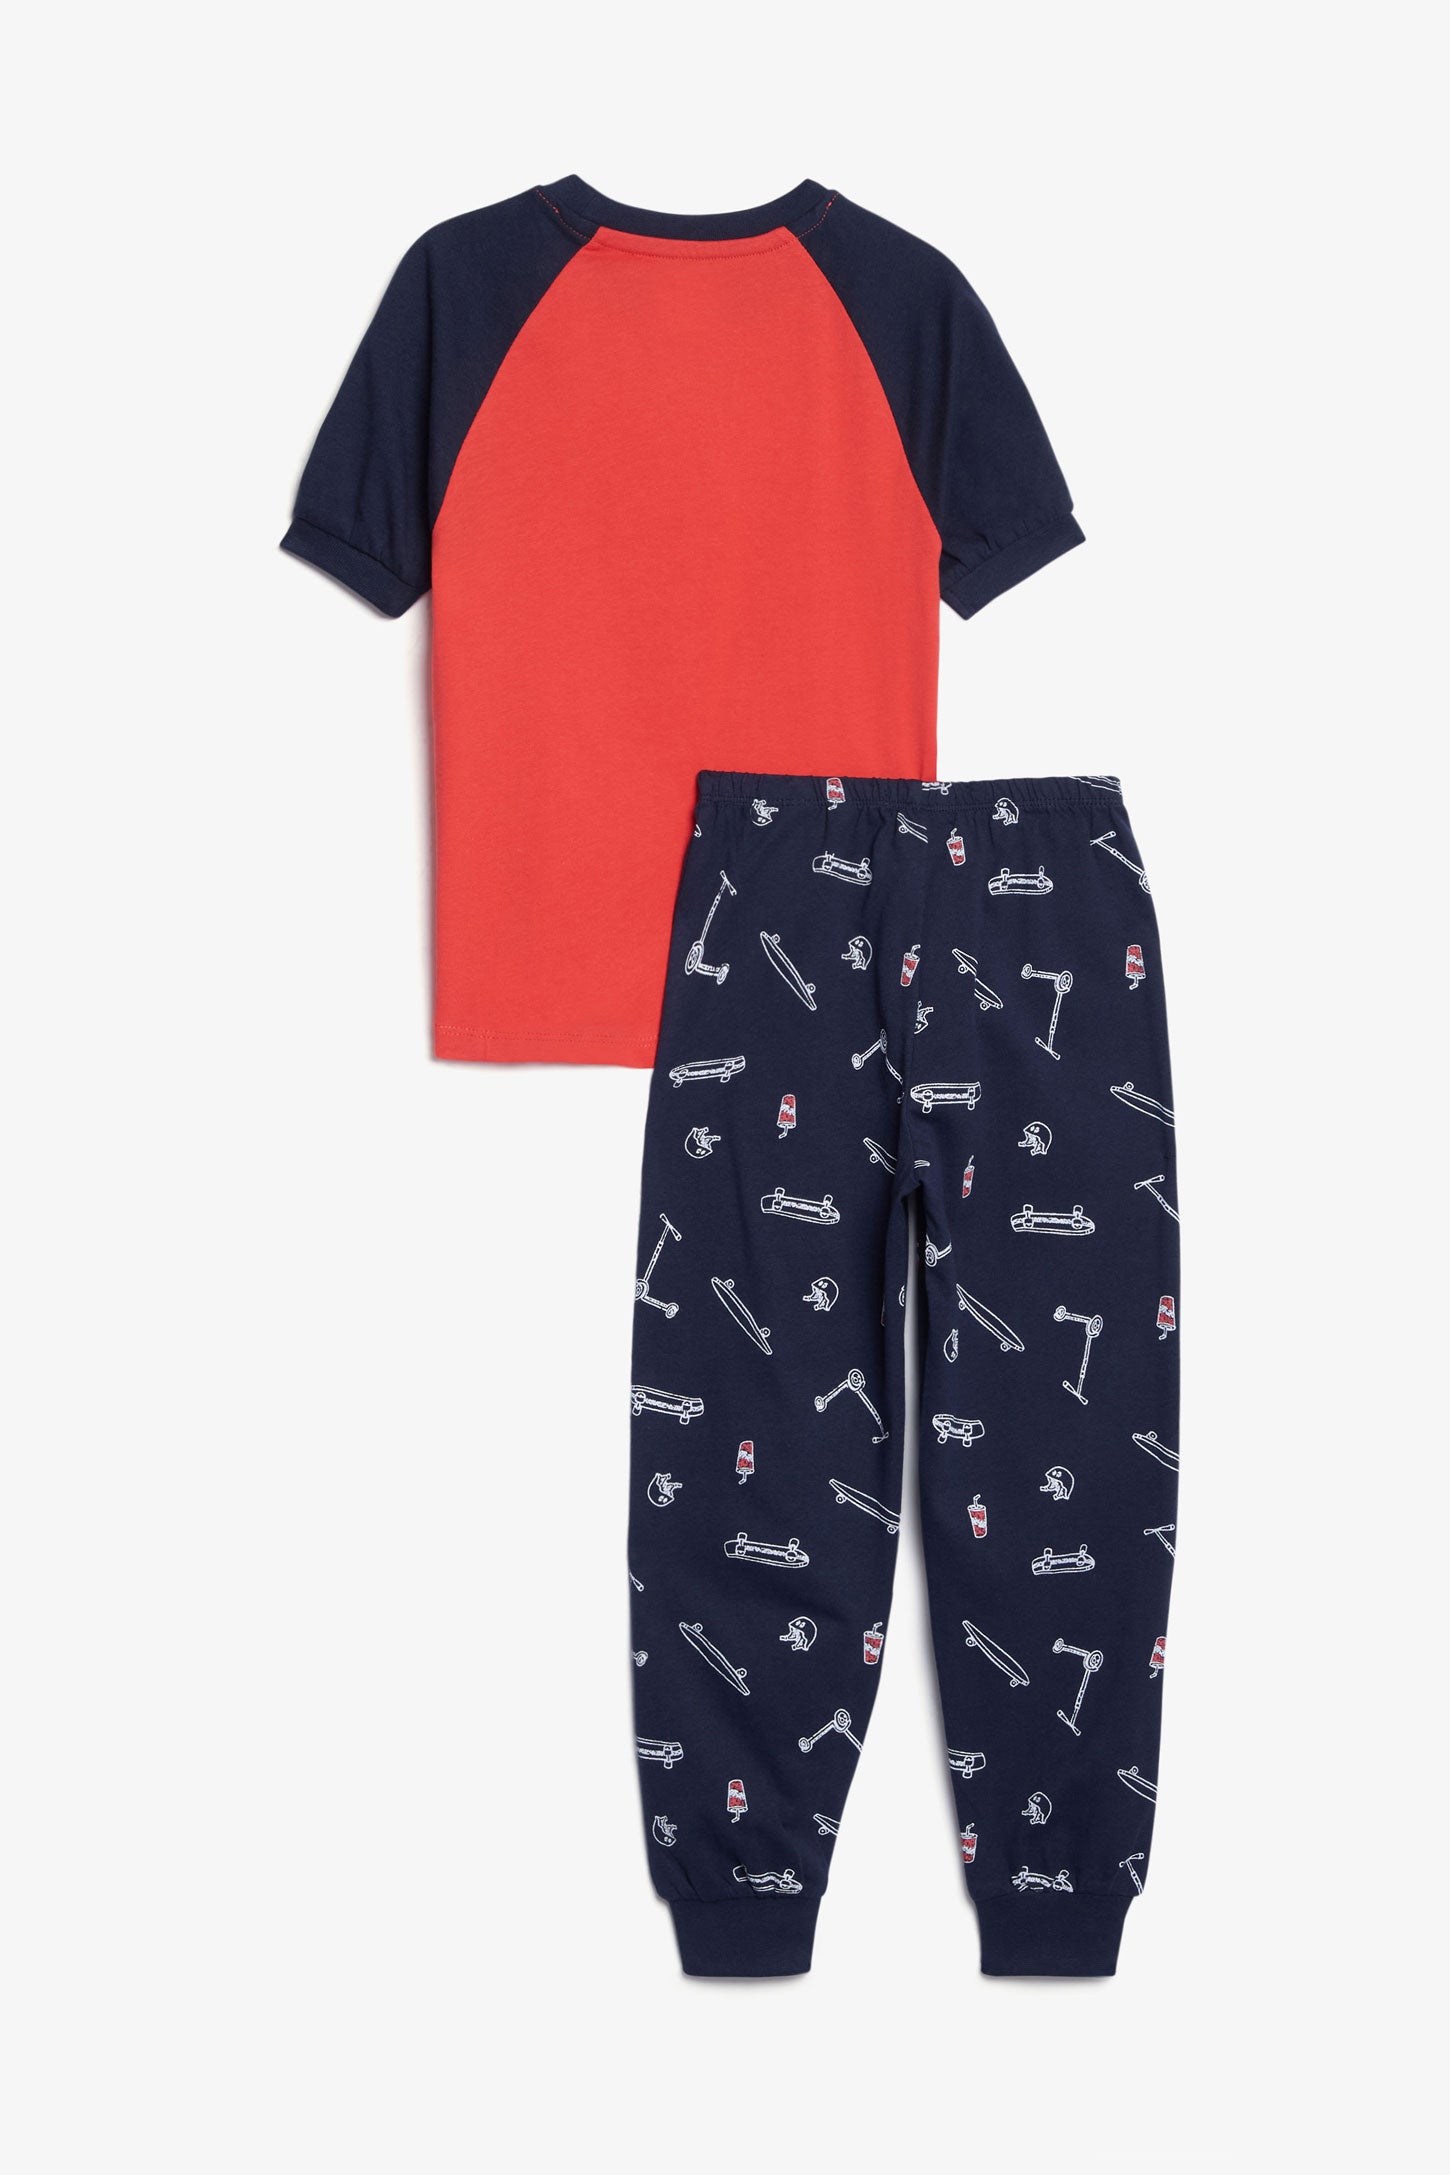 Pyjama 2-pièces en coton, 2/35$ - Enfant garçon && ROUGE